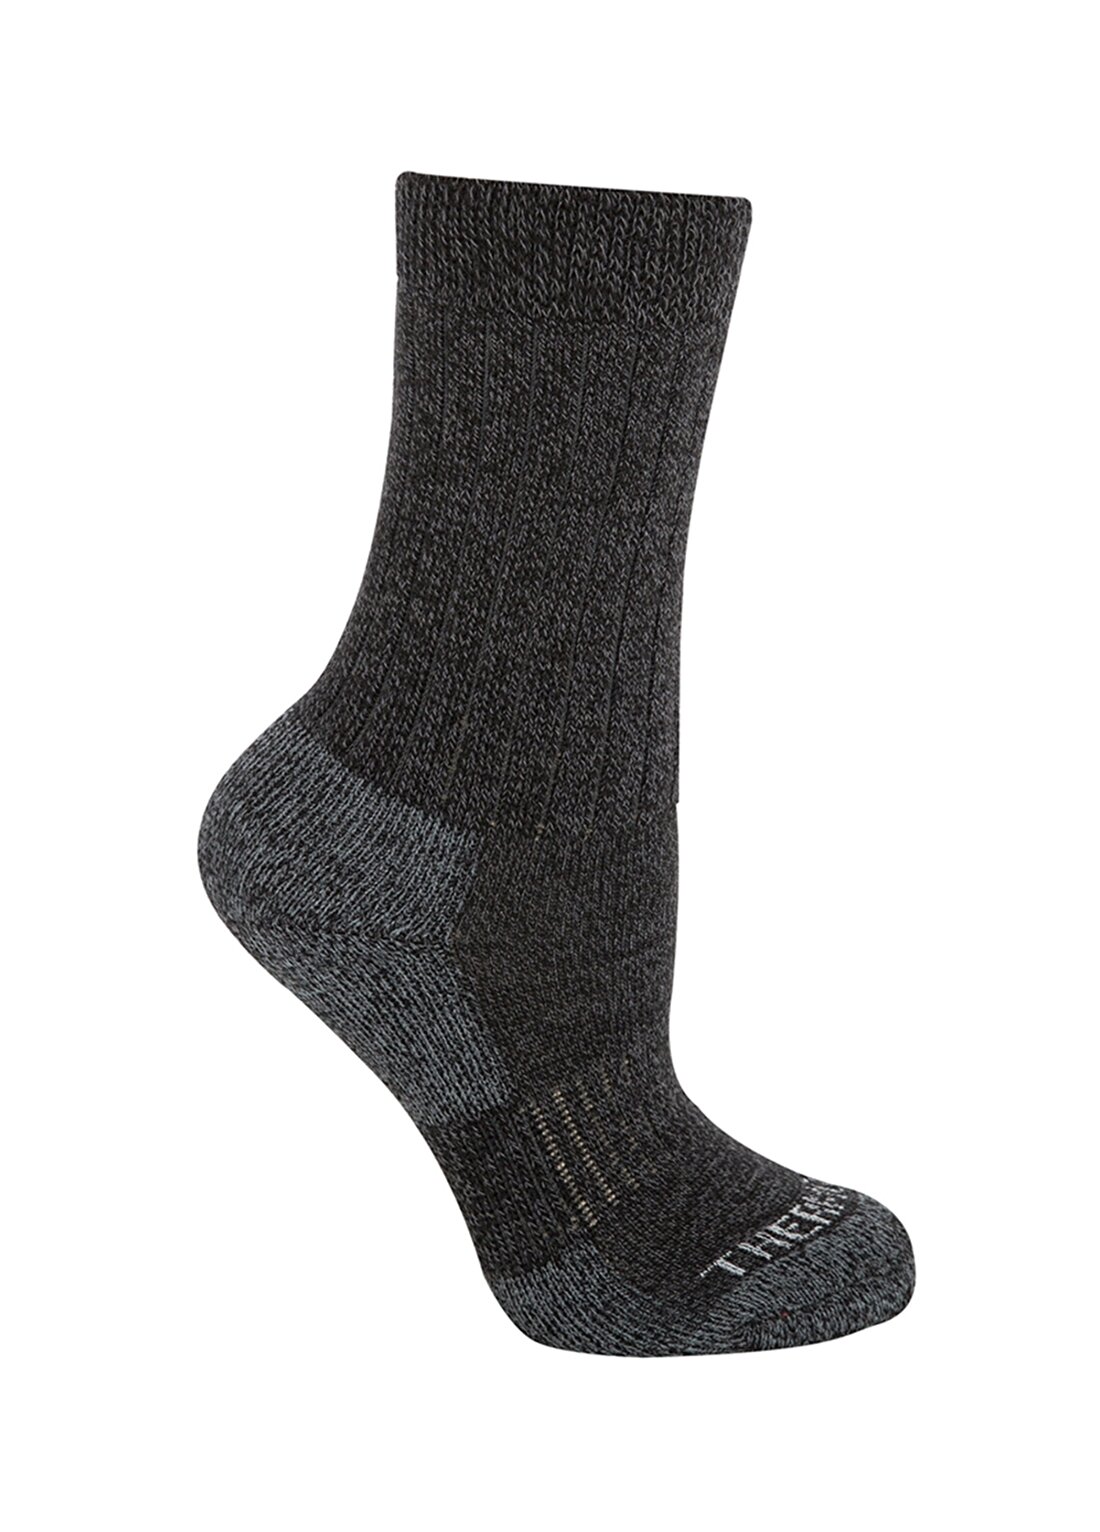 Thermoform Uzun Siyah Unisex Çocuk Outdoor Çorap